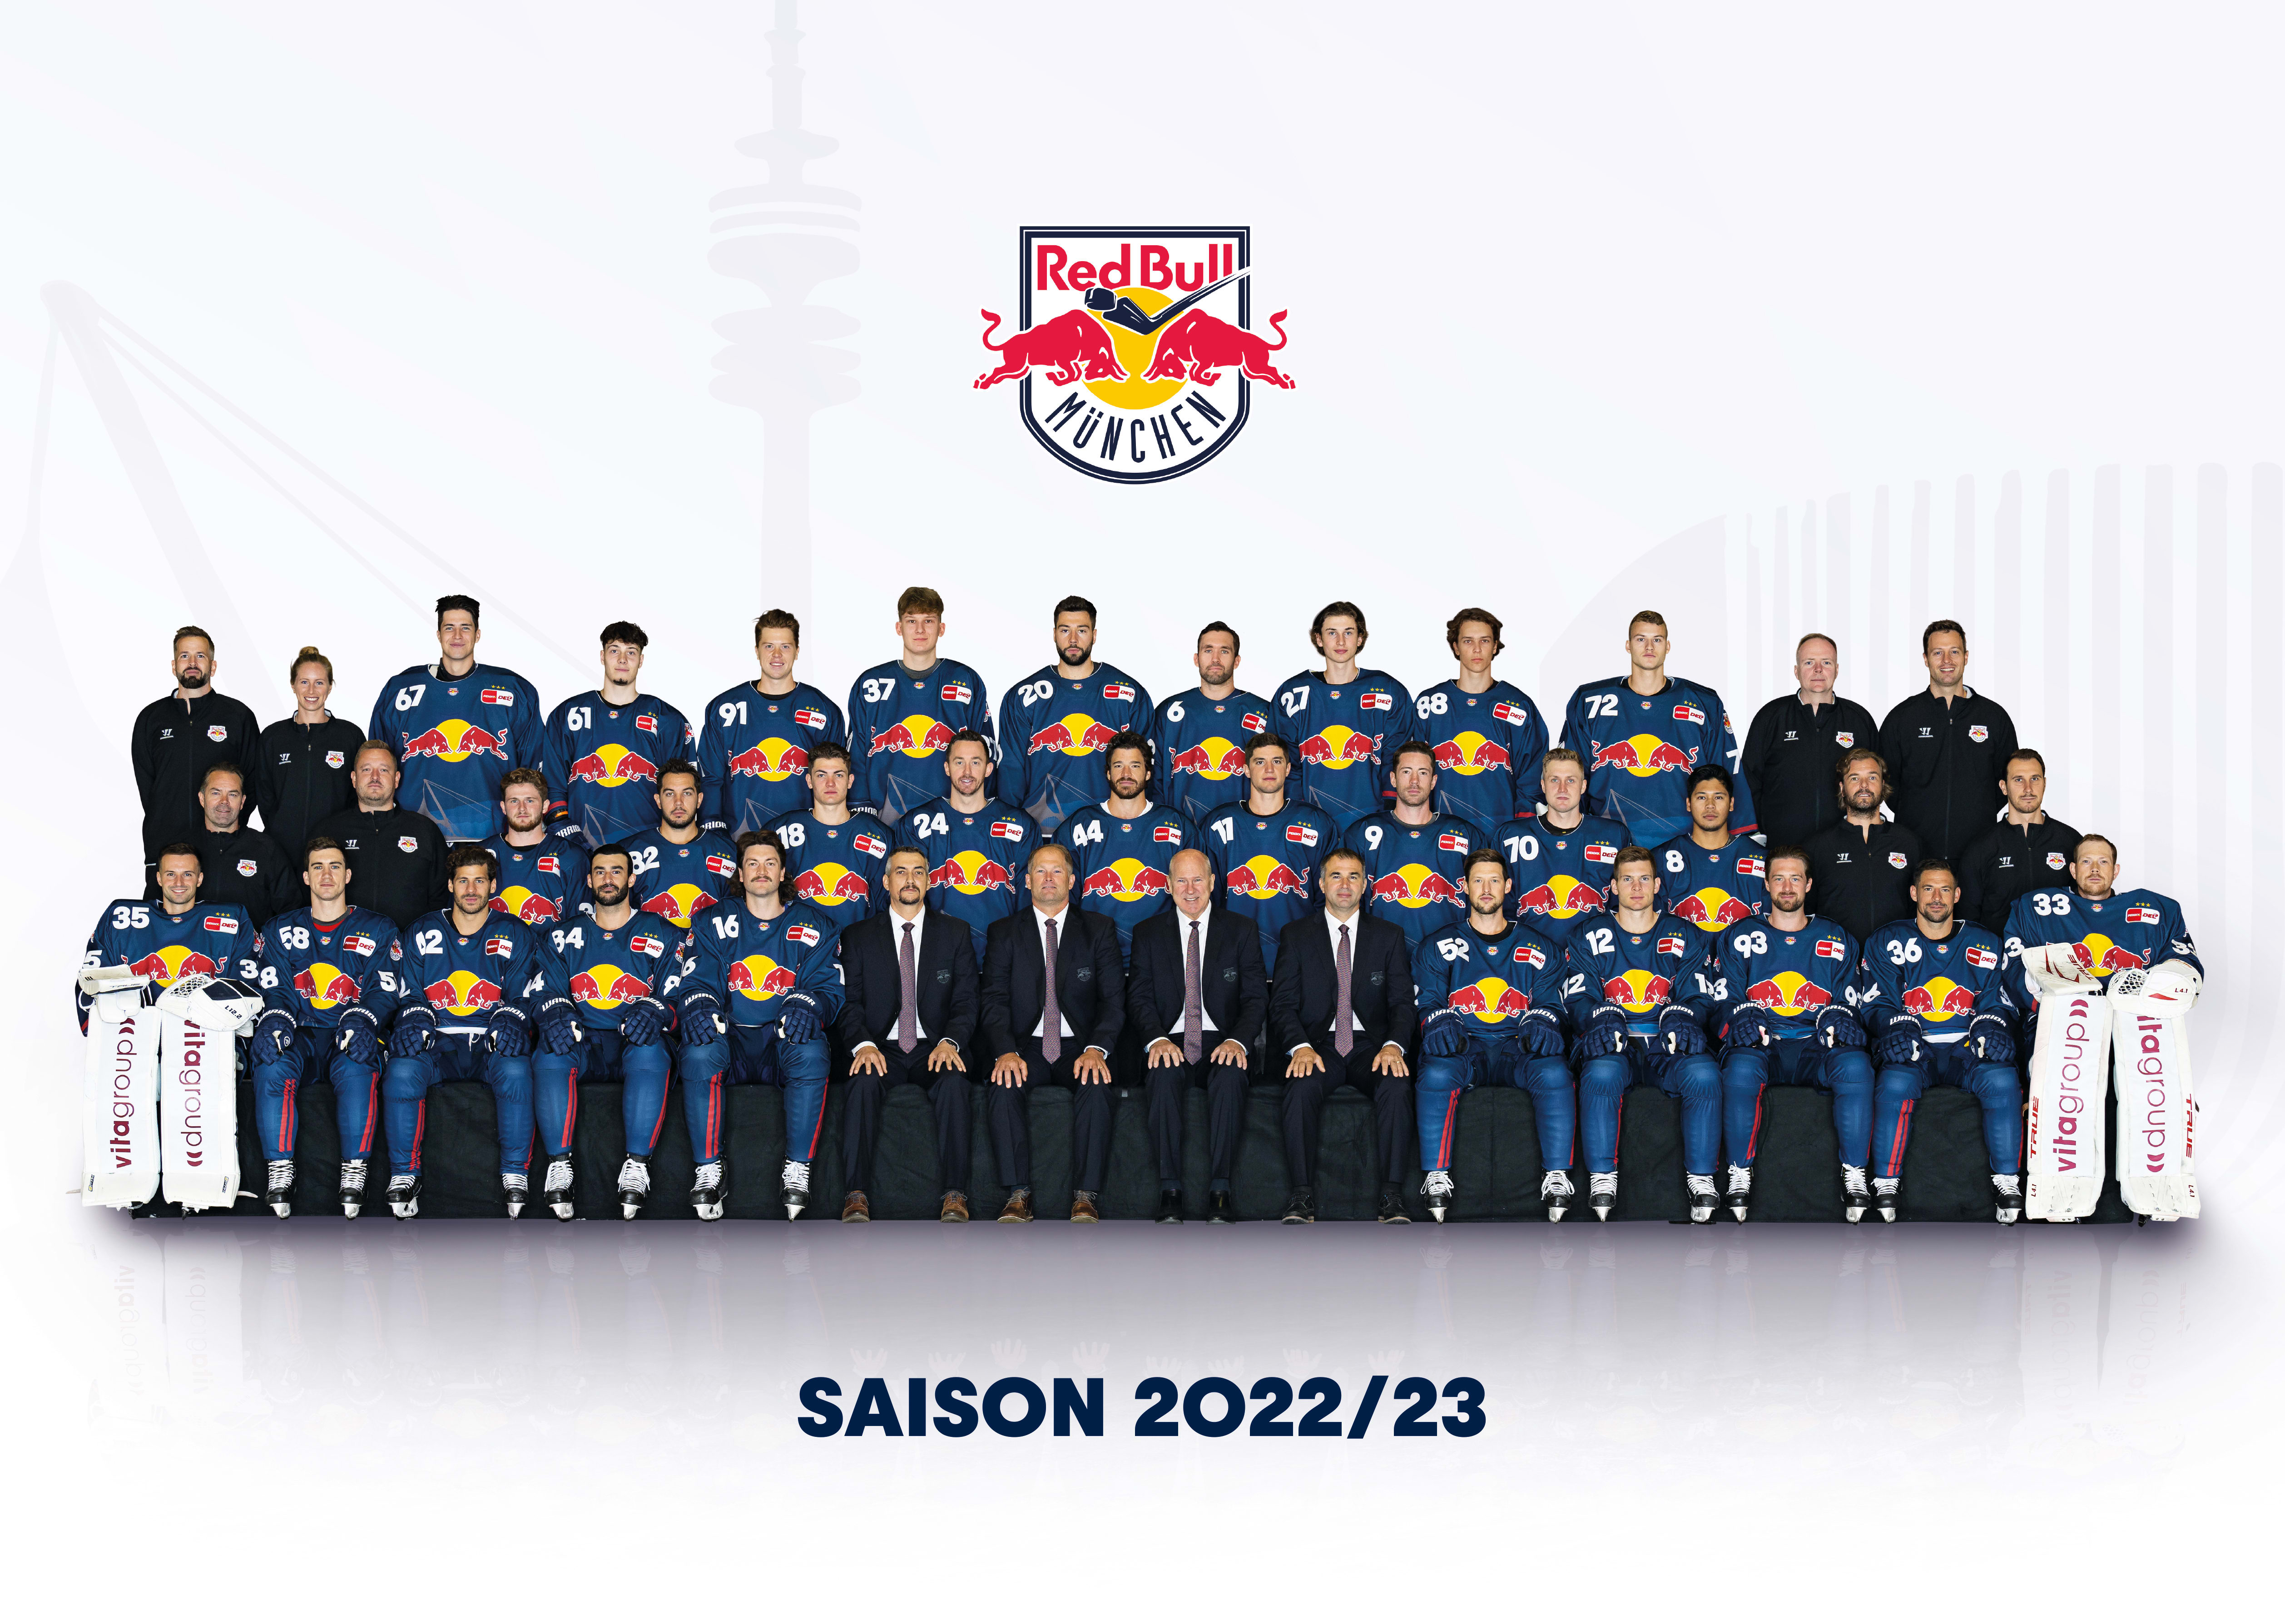 Red Bull München Das Teamfoto für die Saison 2022/23